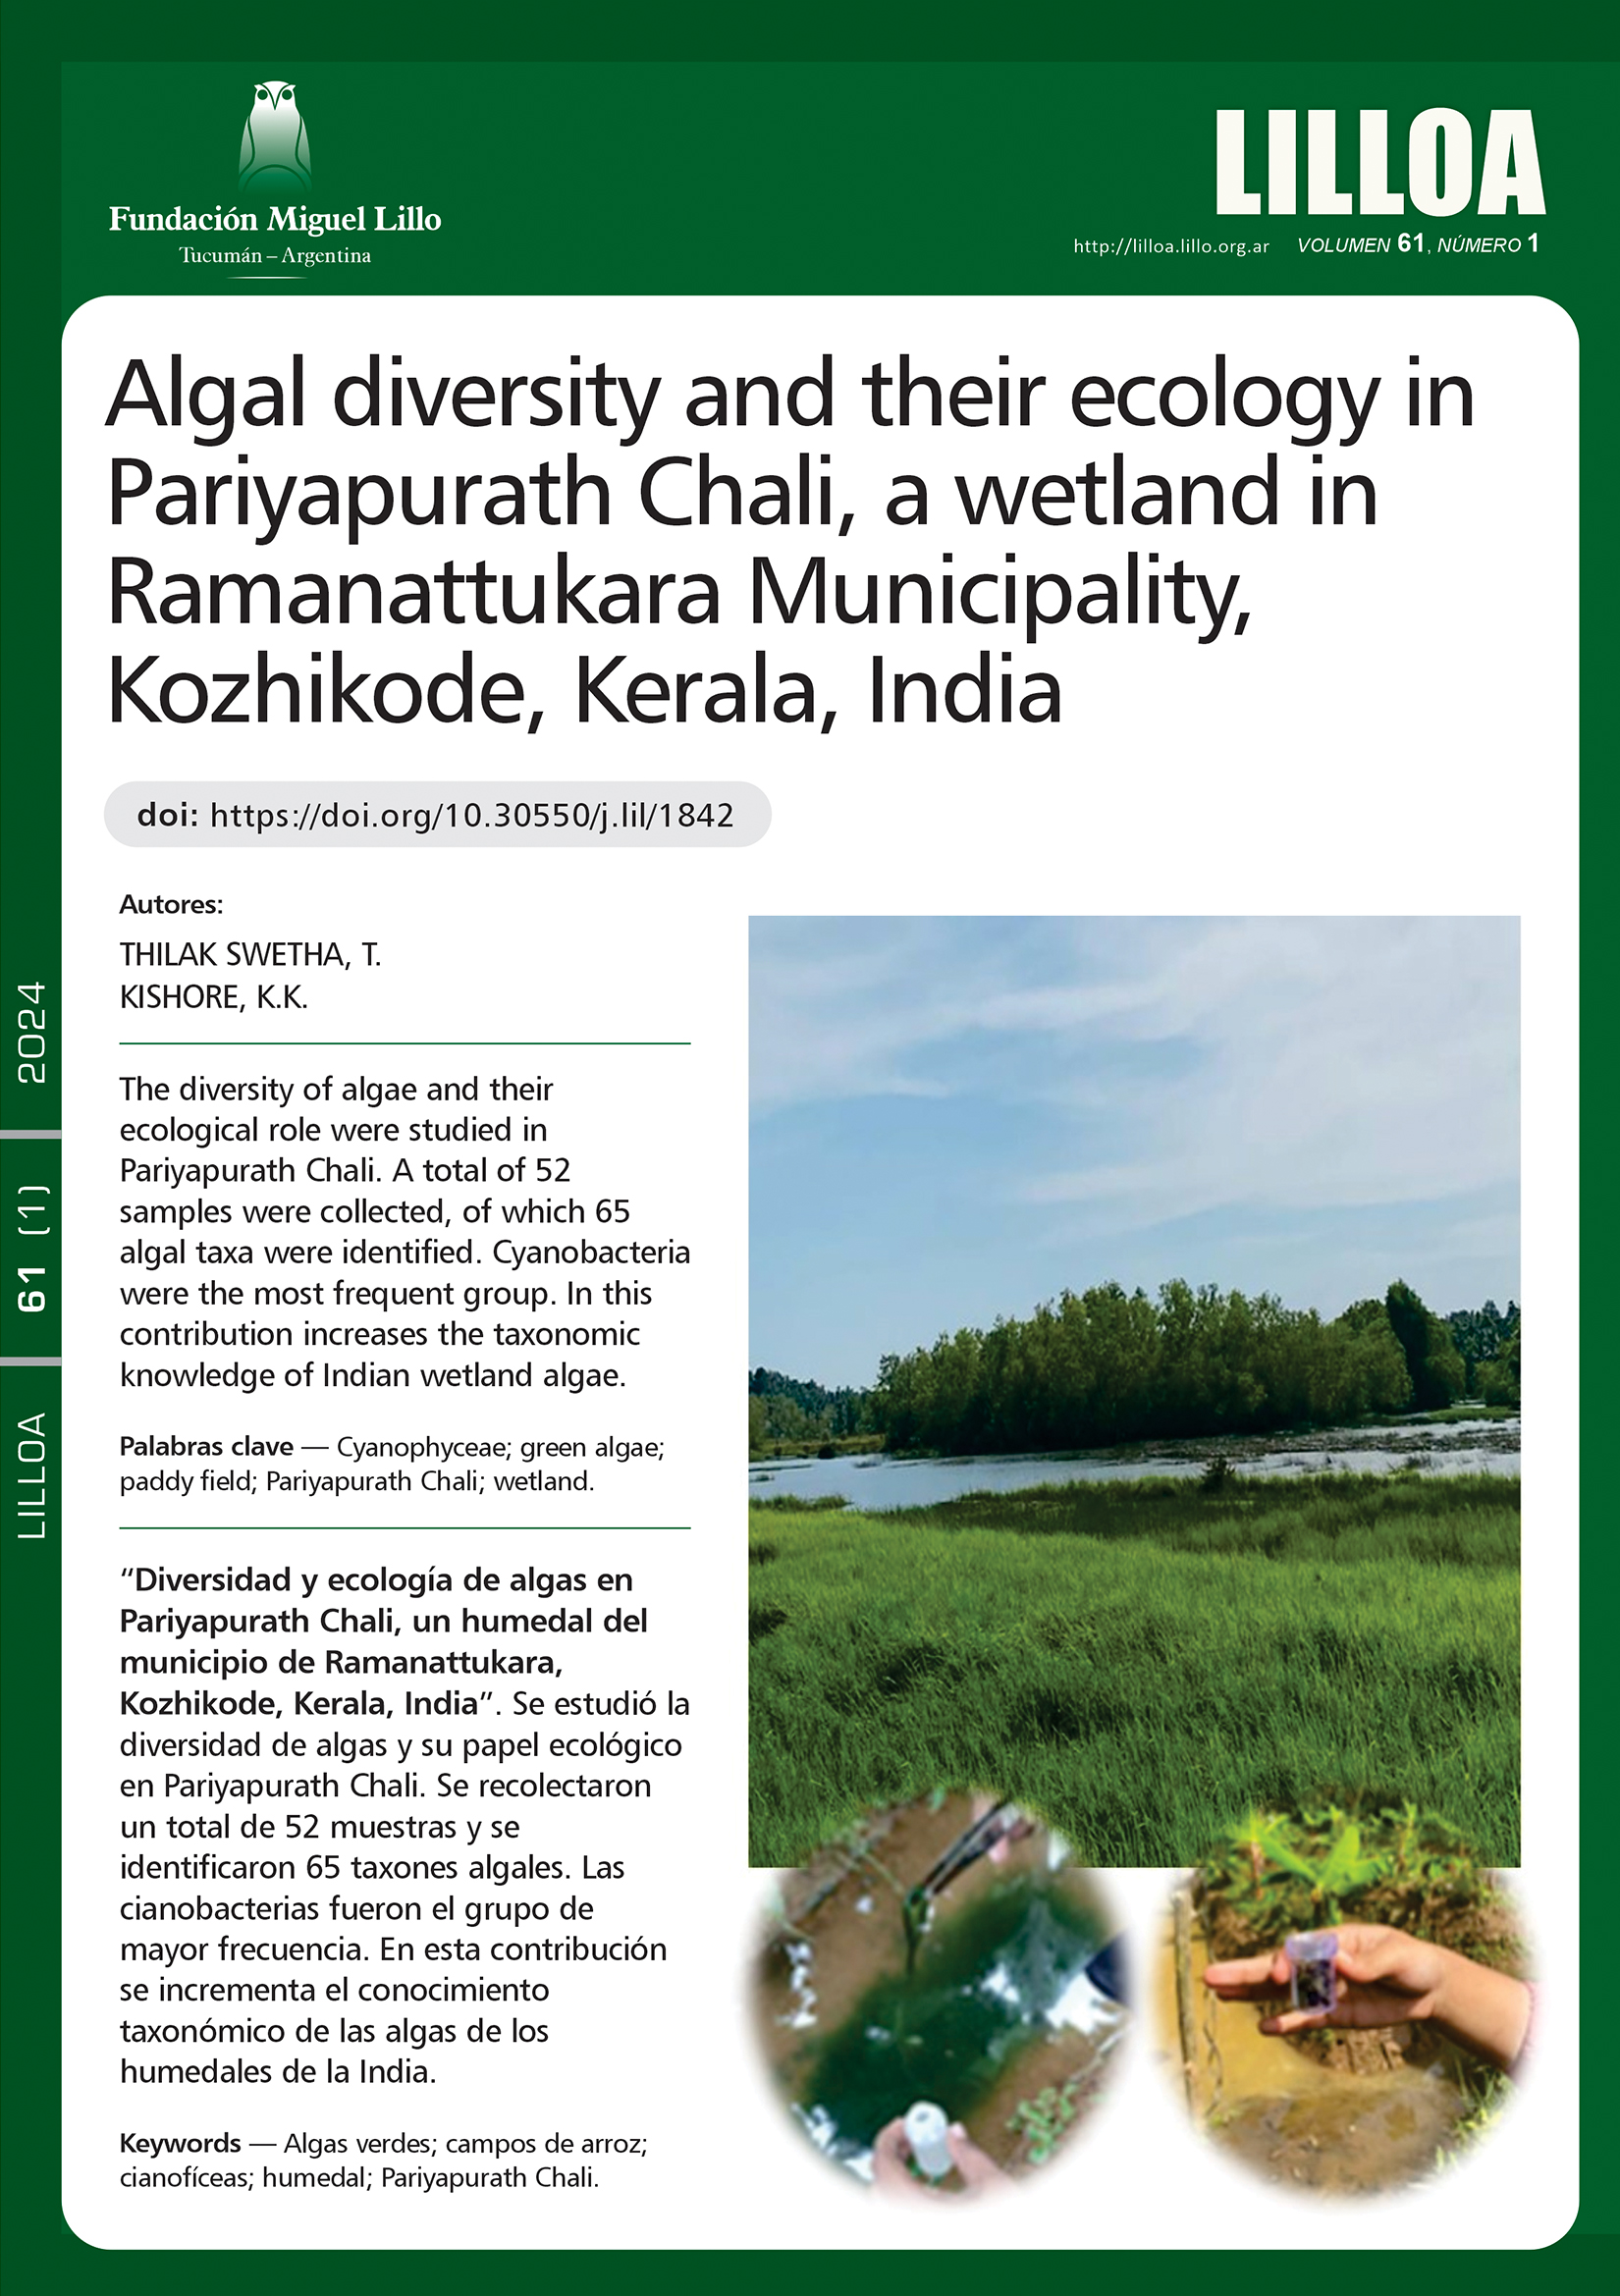 Diversidad y ecología de algas en Pariyapurath Chali, un humedal del municipio de Ramanattukara, Kozhikode, Kerala, India